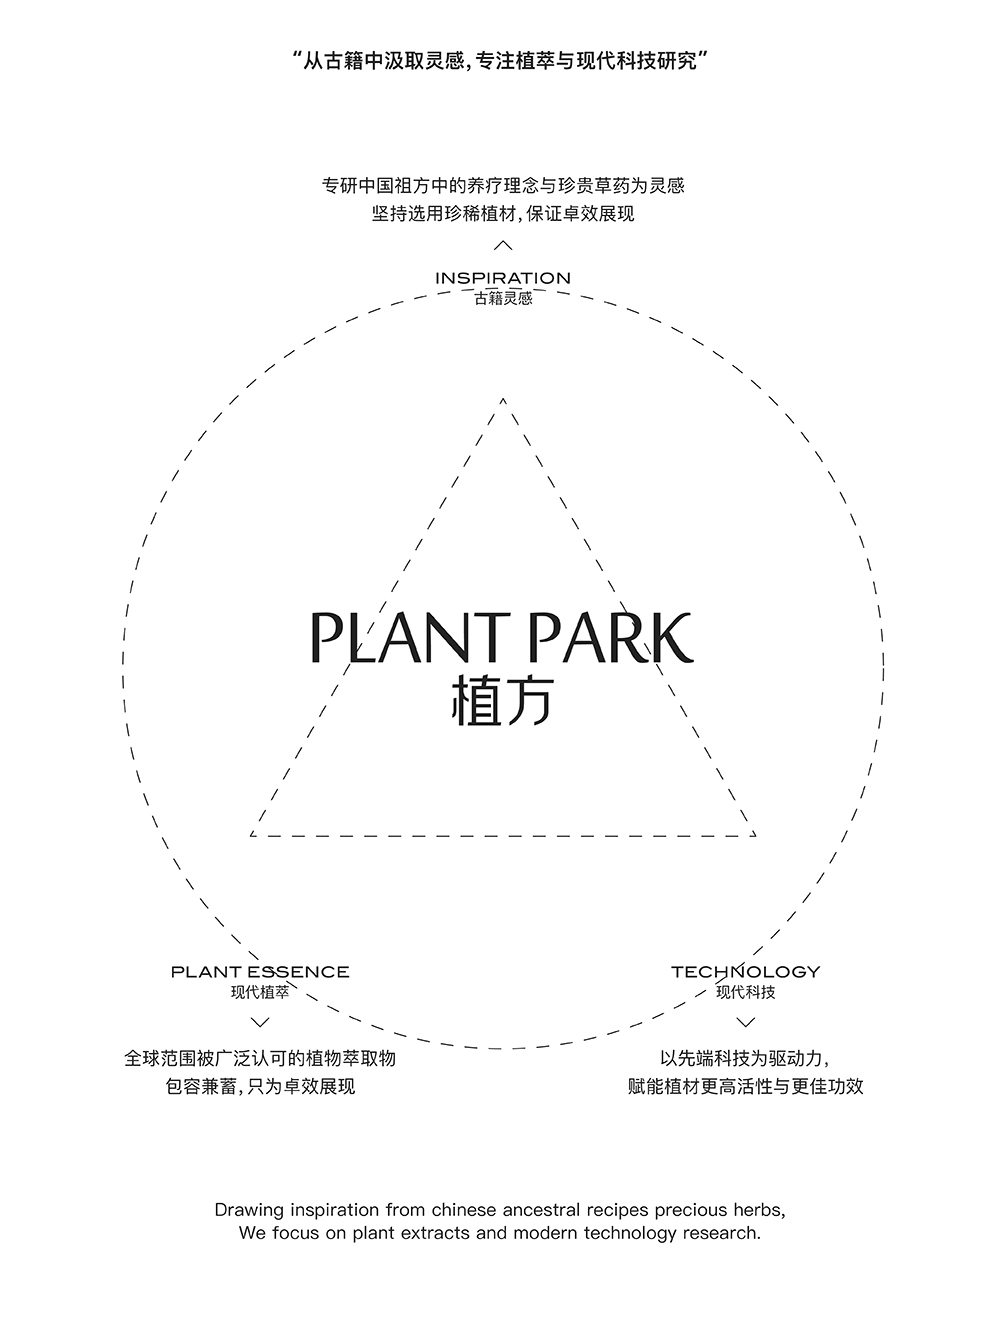 PLANK PARK植方品牌视觉升级图2